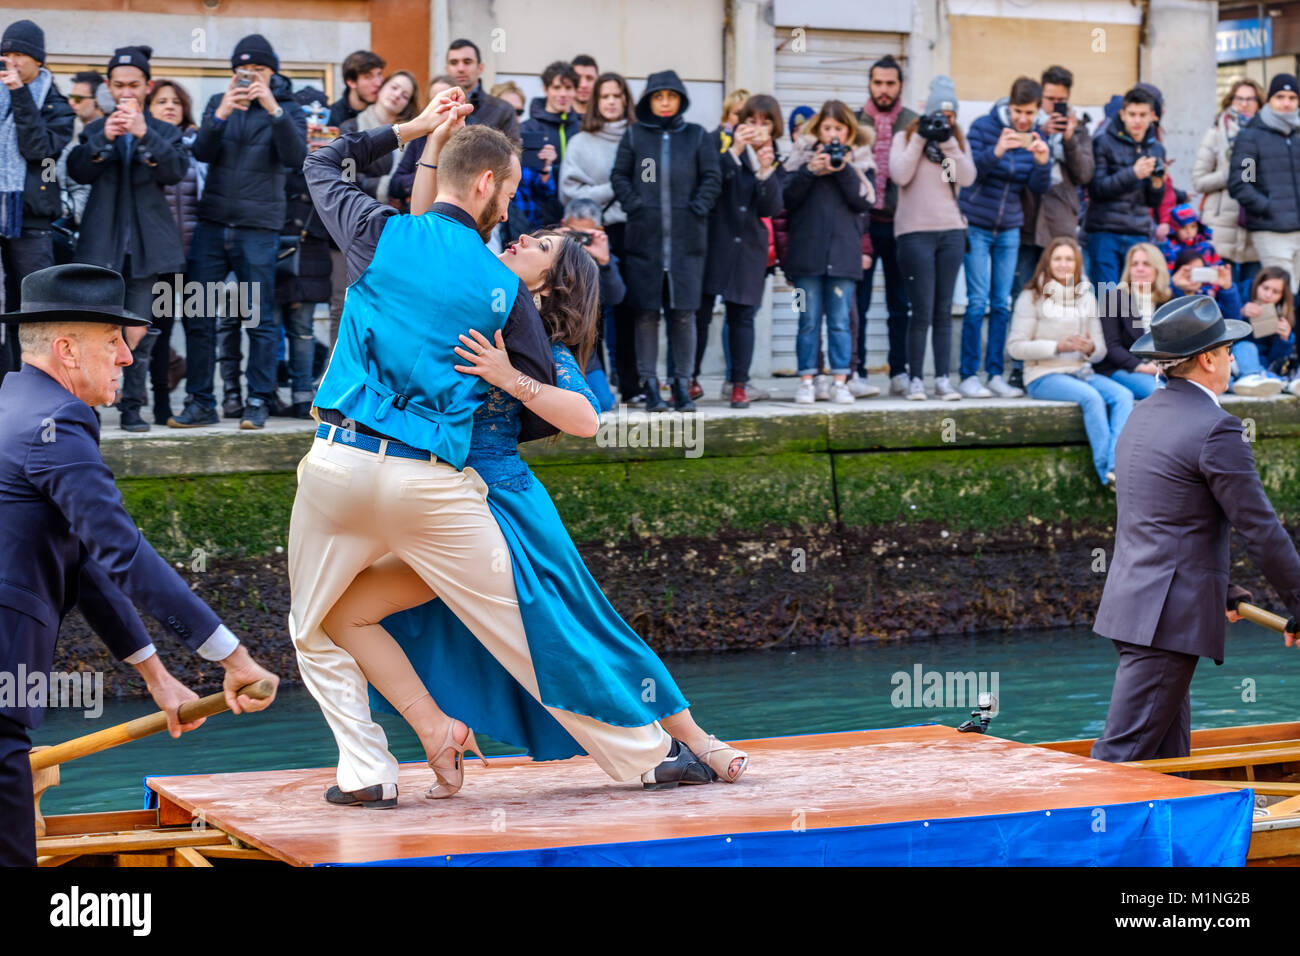 Tango Tänzer tanzen in das Boot im Wasser Parade der Karneval von Venedig 2018 Teilnehmenden. Venedig, Italien. 28. Januar 2018. Stockfoto